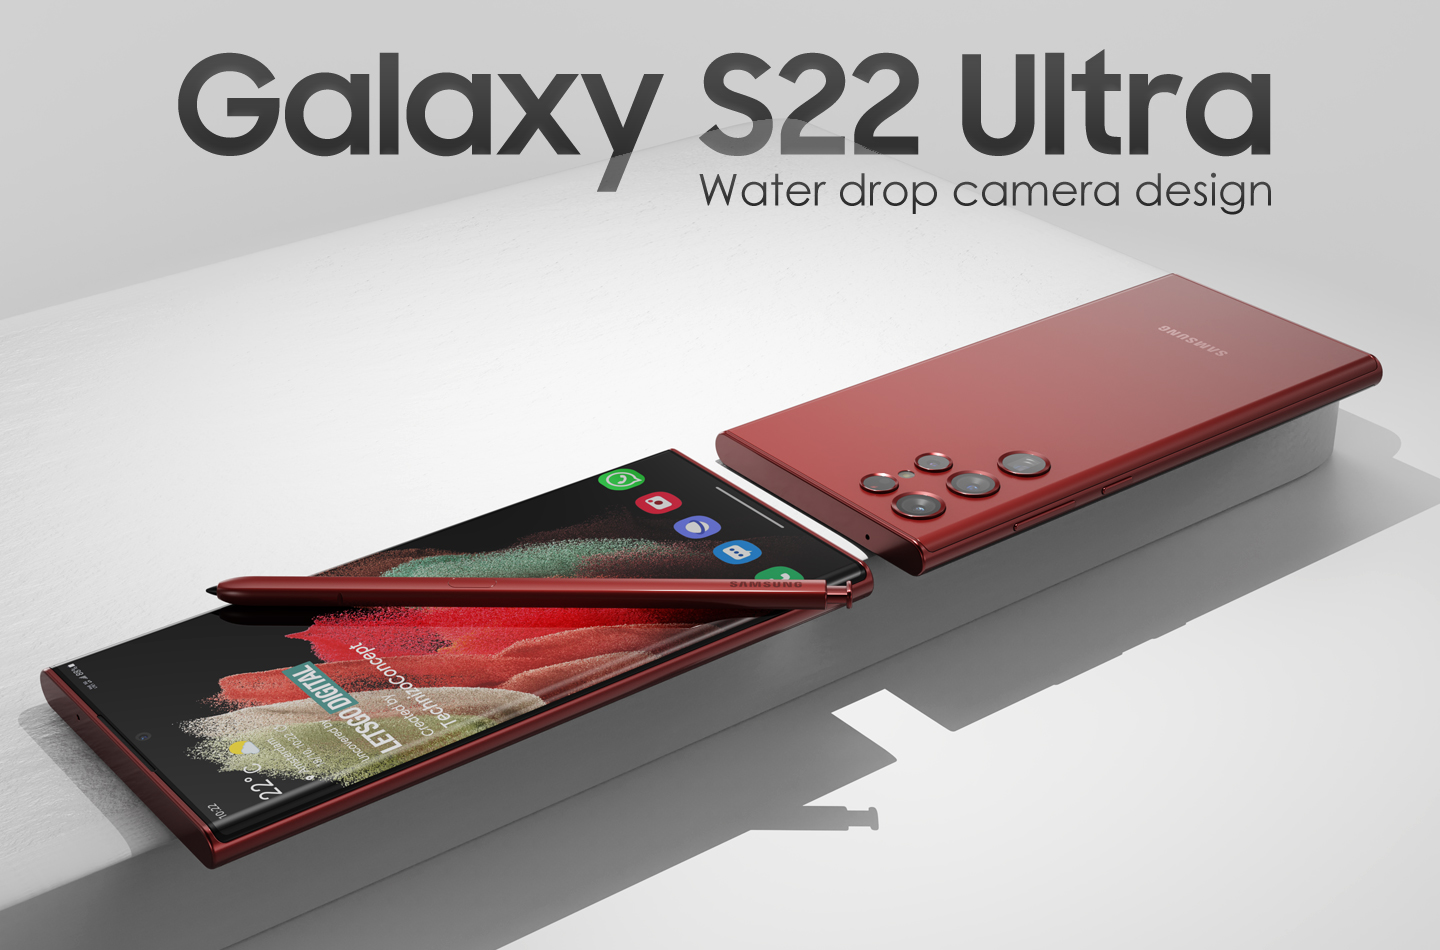 Des images de la version finale du Galaxy S22 Ultra, le fleuron de Samsung, ont fait surface en ligne